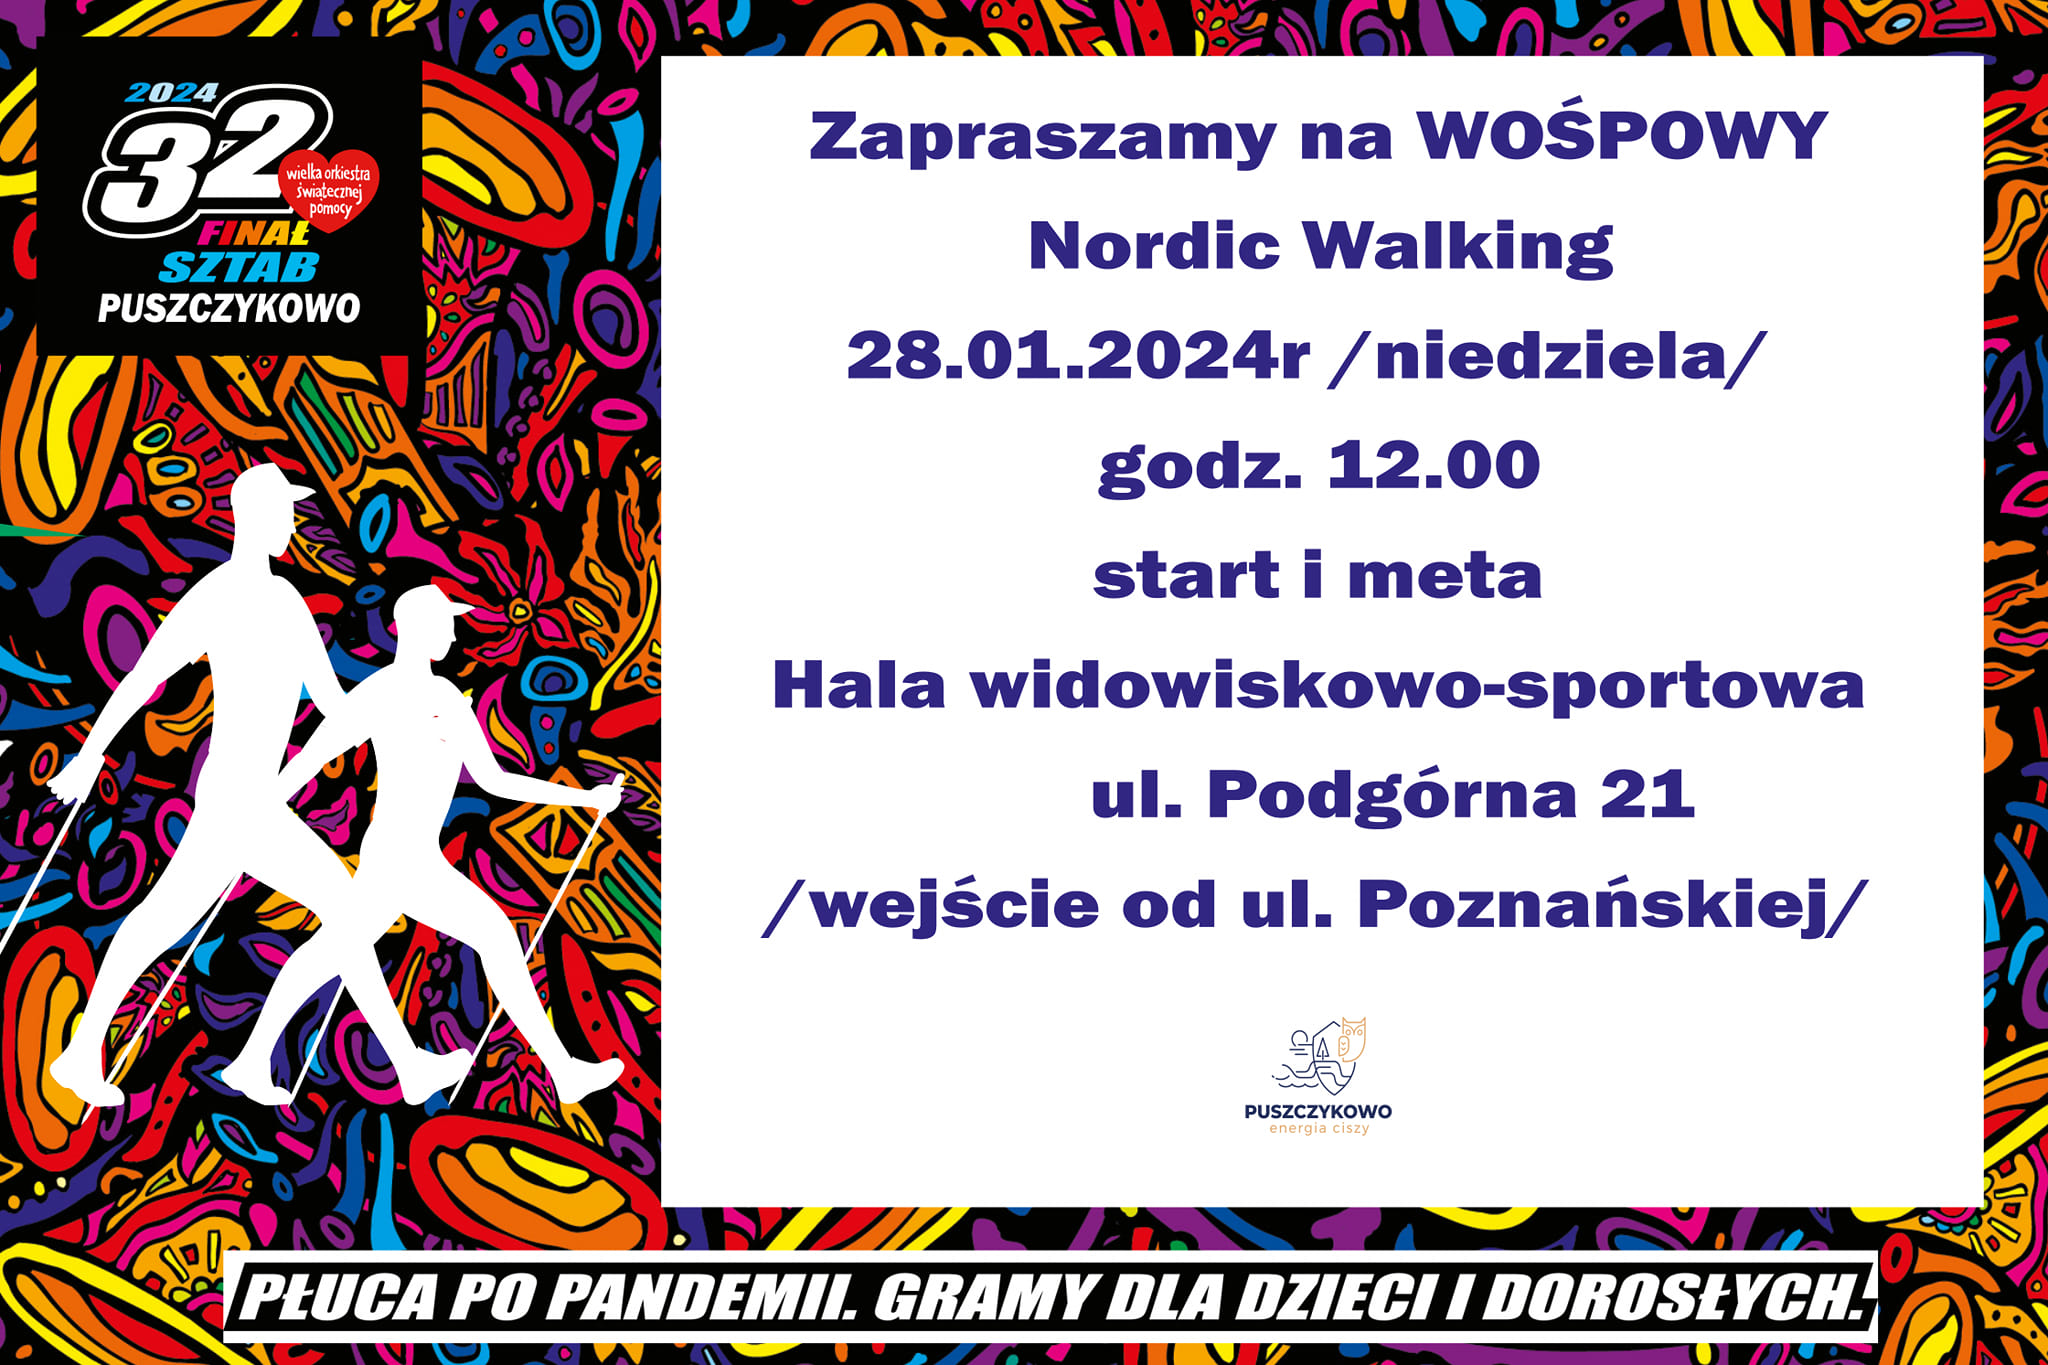 Zapraszamy na marsz Nordic Walking, zorganizowany w ramach wsparcia 32. finału WOŚP.